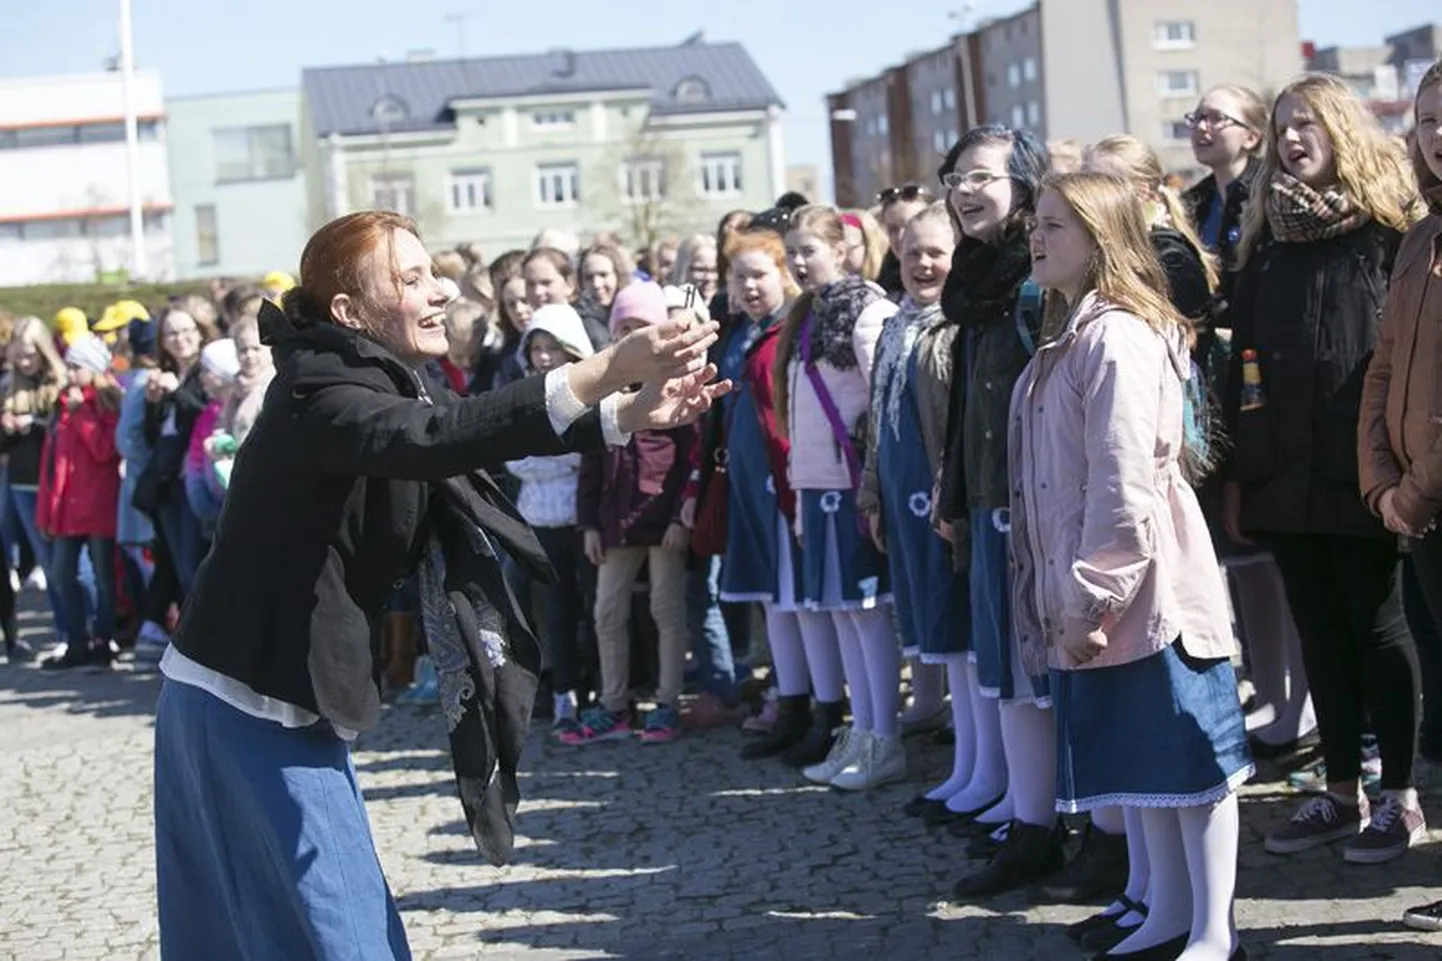 Noorte lauljate ja nende dirigendi Elo Üleoja palgel särab puhas laulurõõm – Rakvere Keskväljak heliseb imelistest häältest.